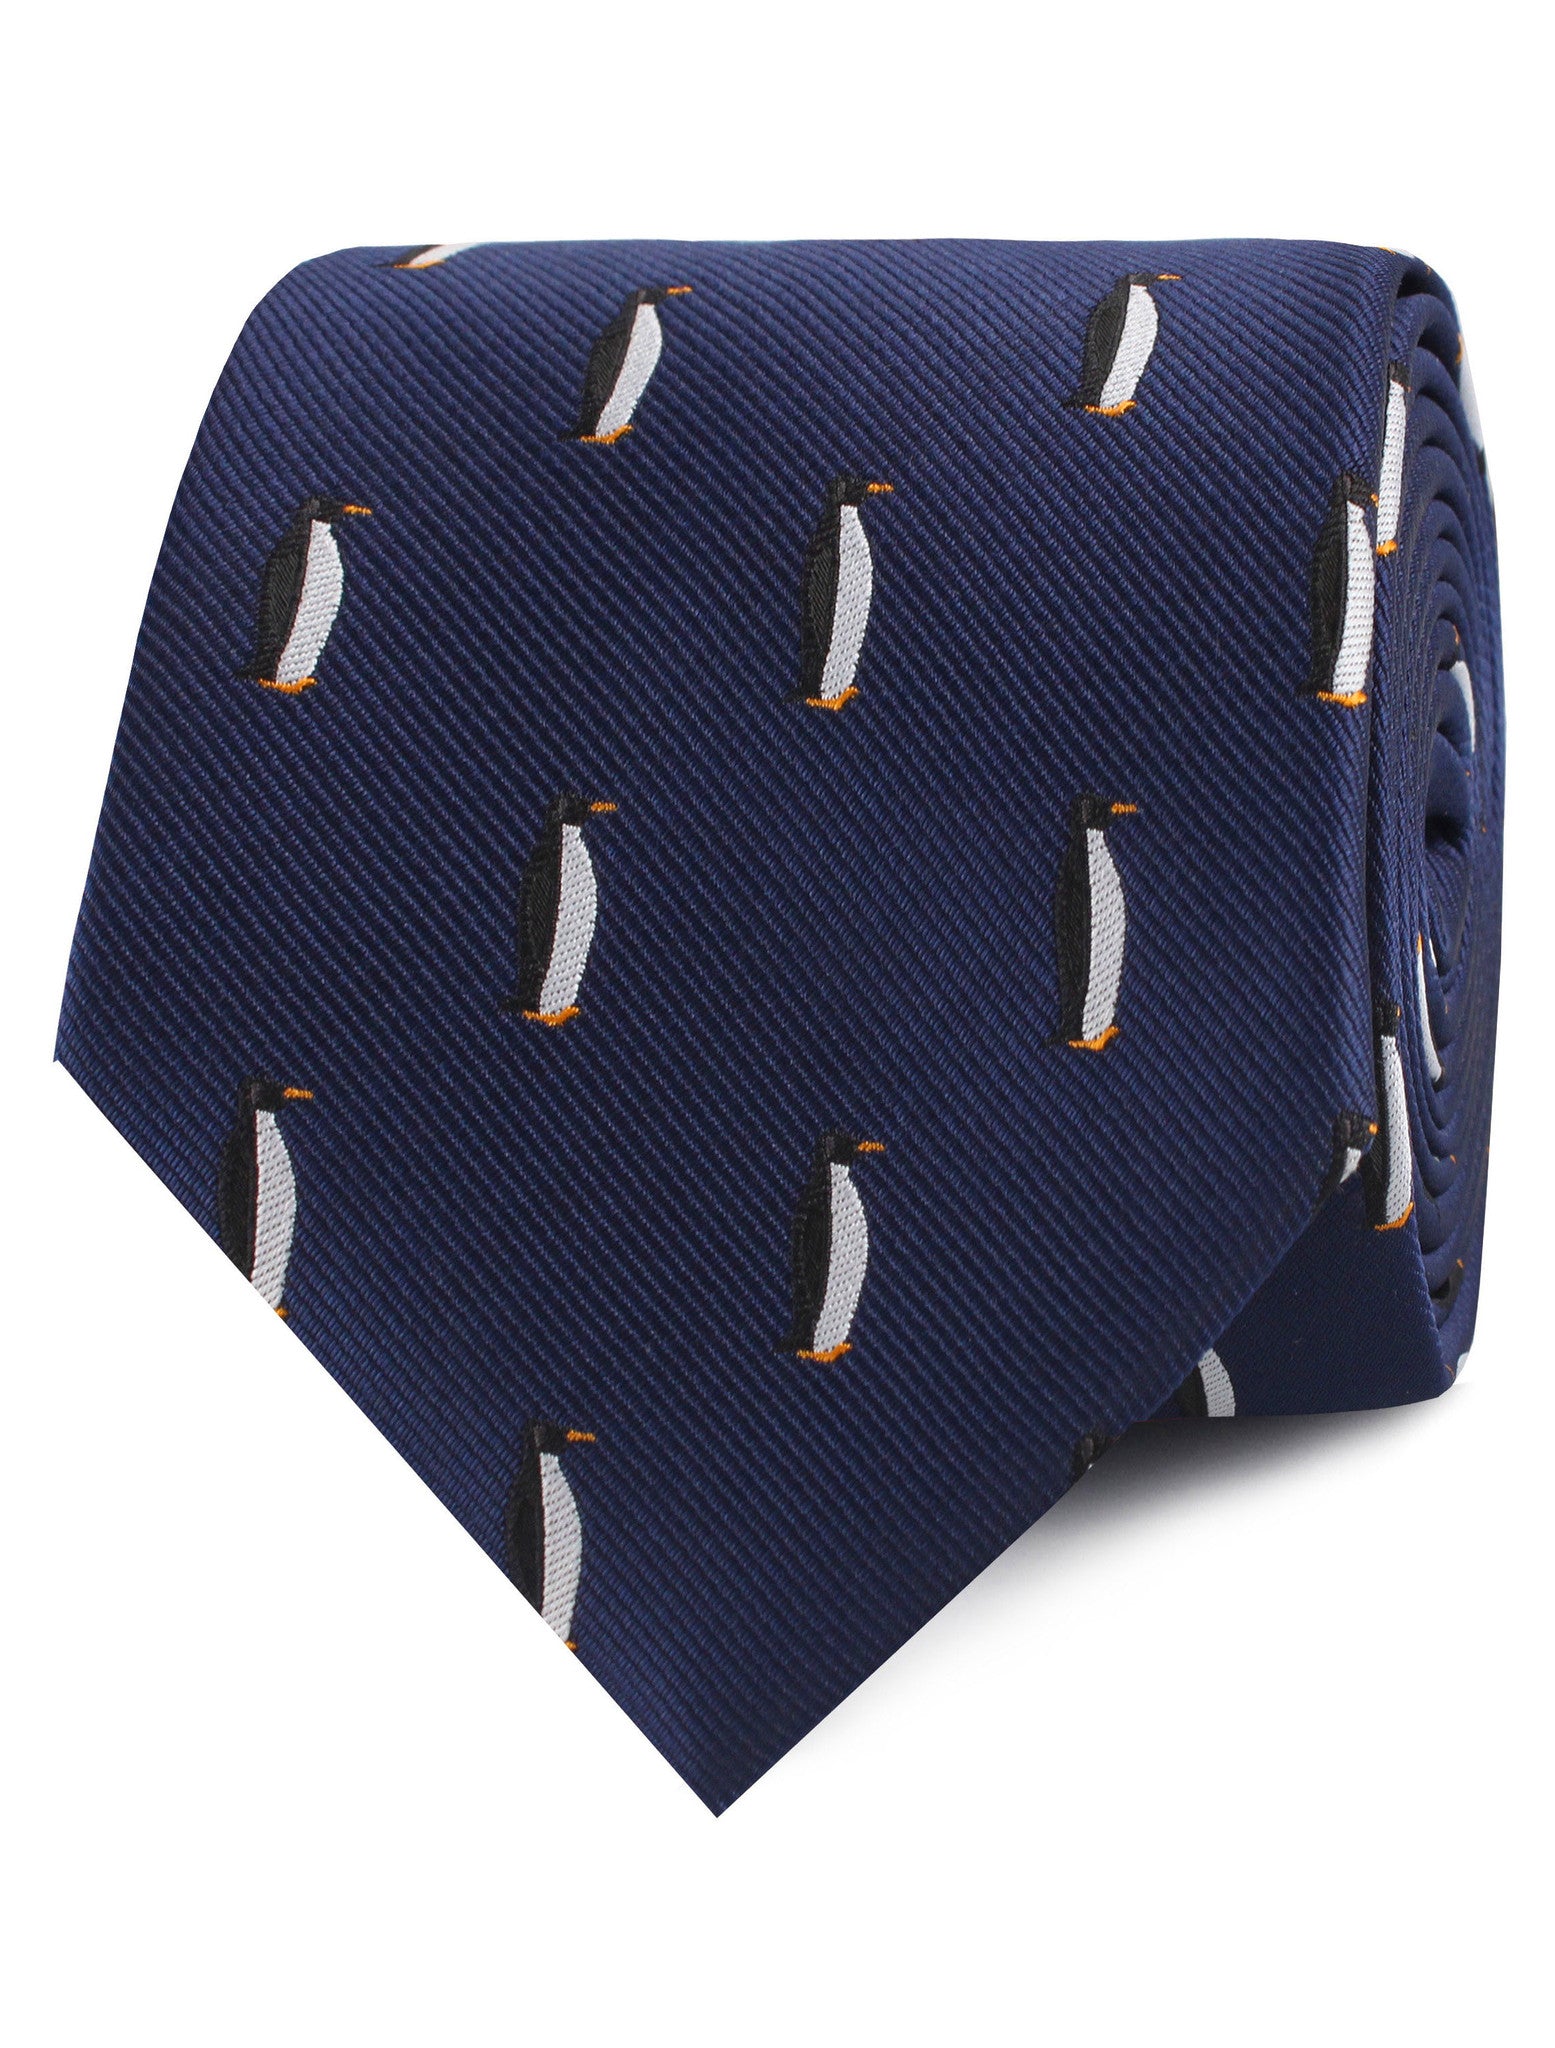 King Penguin Necktie